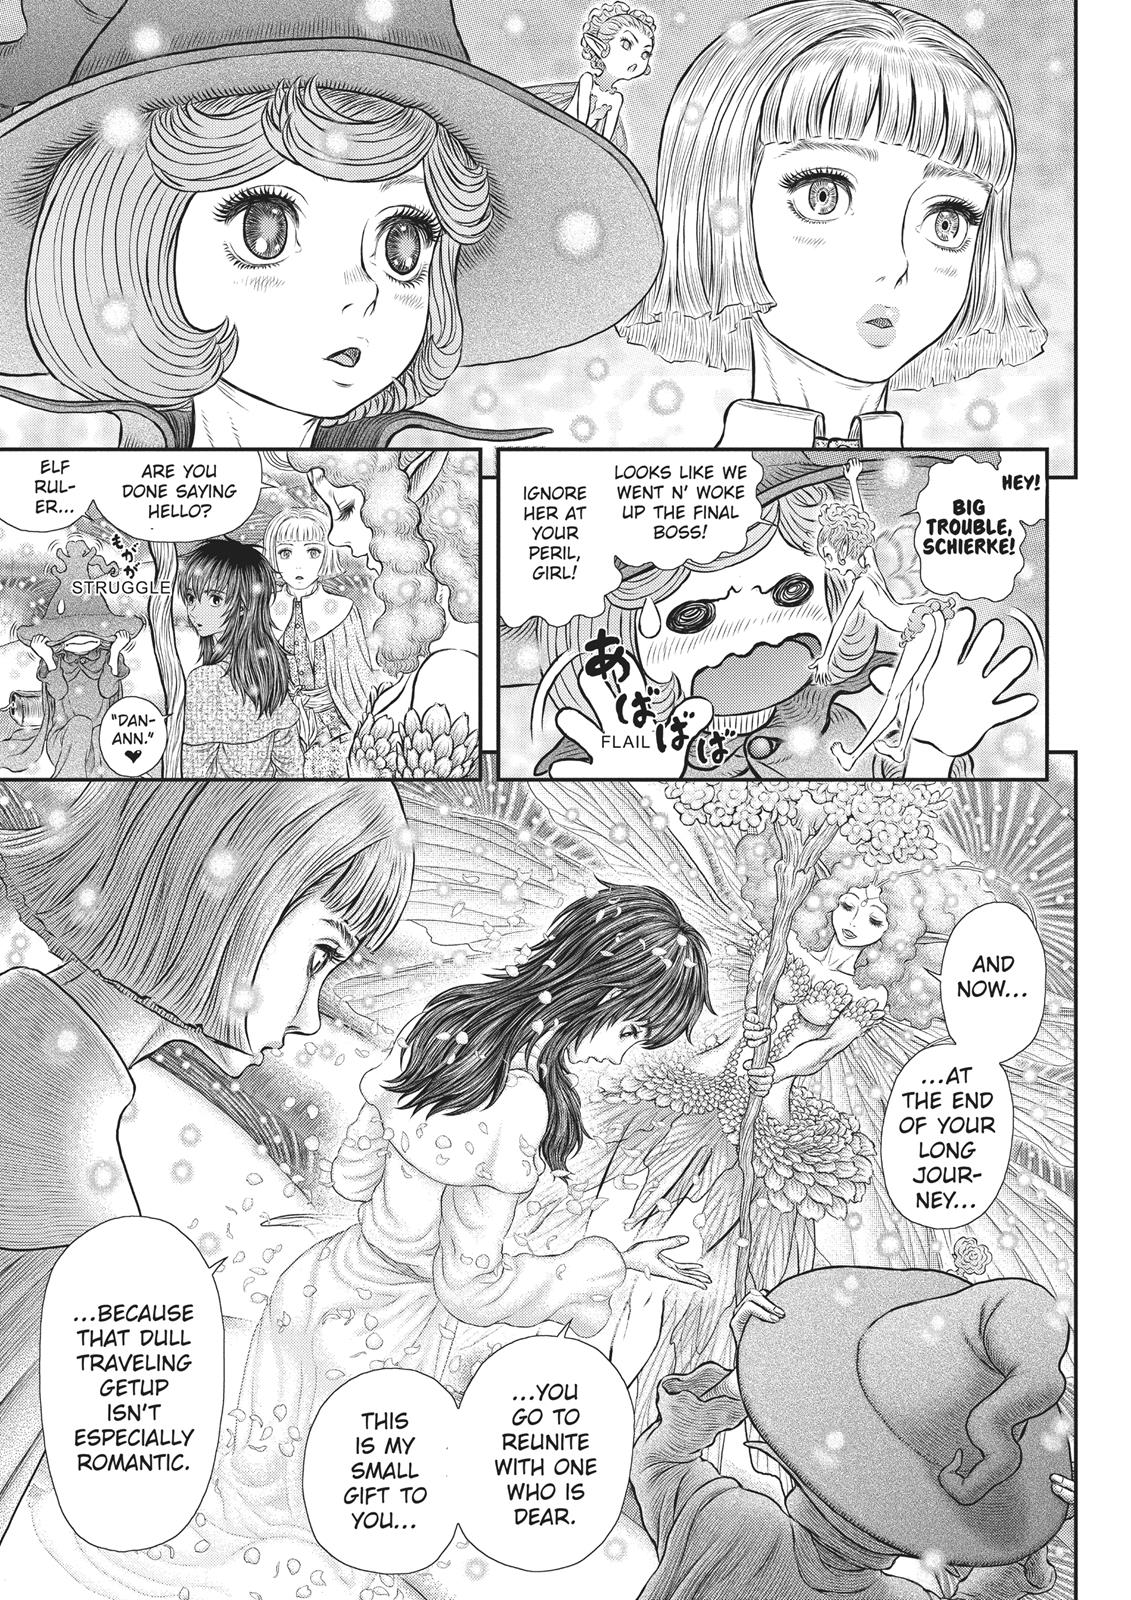 Berserk Manga Chapter 355 image 09